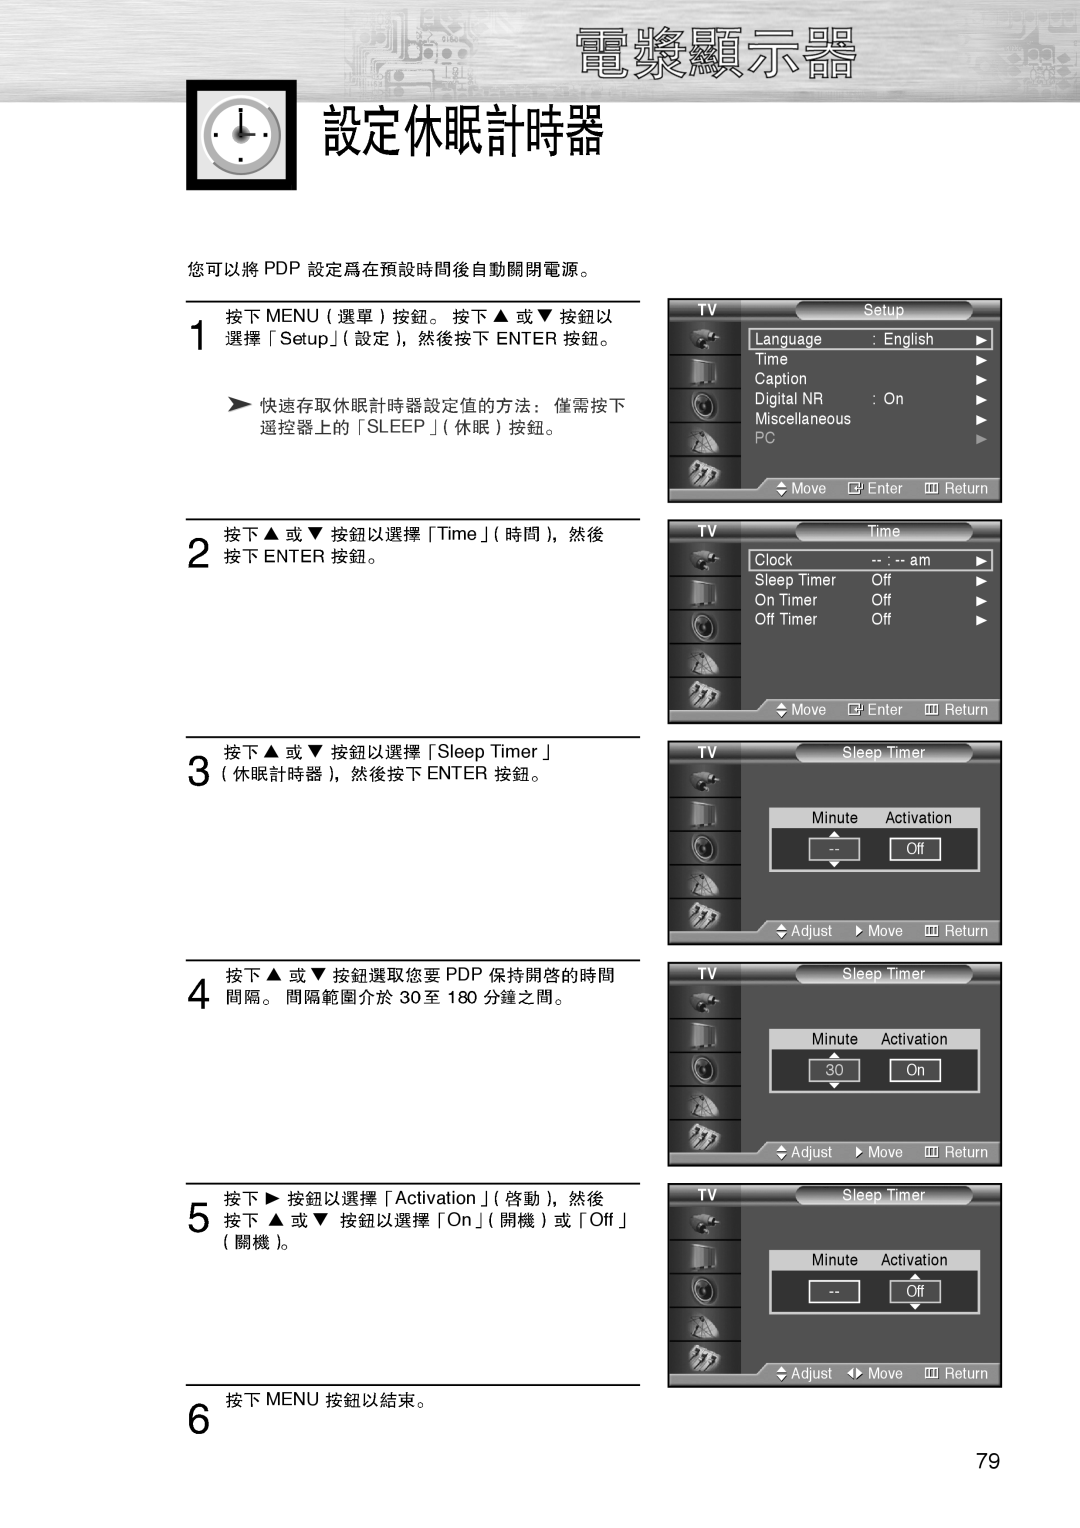 Samsung PL-42D4S manual Menu, Sleep Timer ENTER, Activation, 30 On 